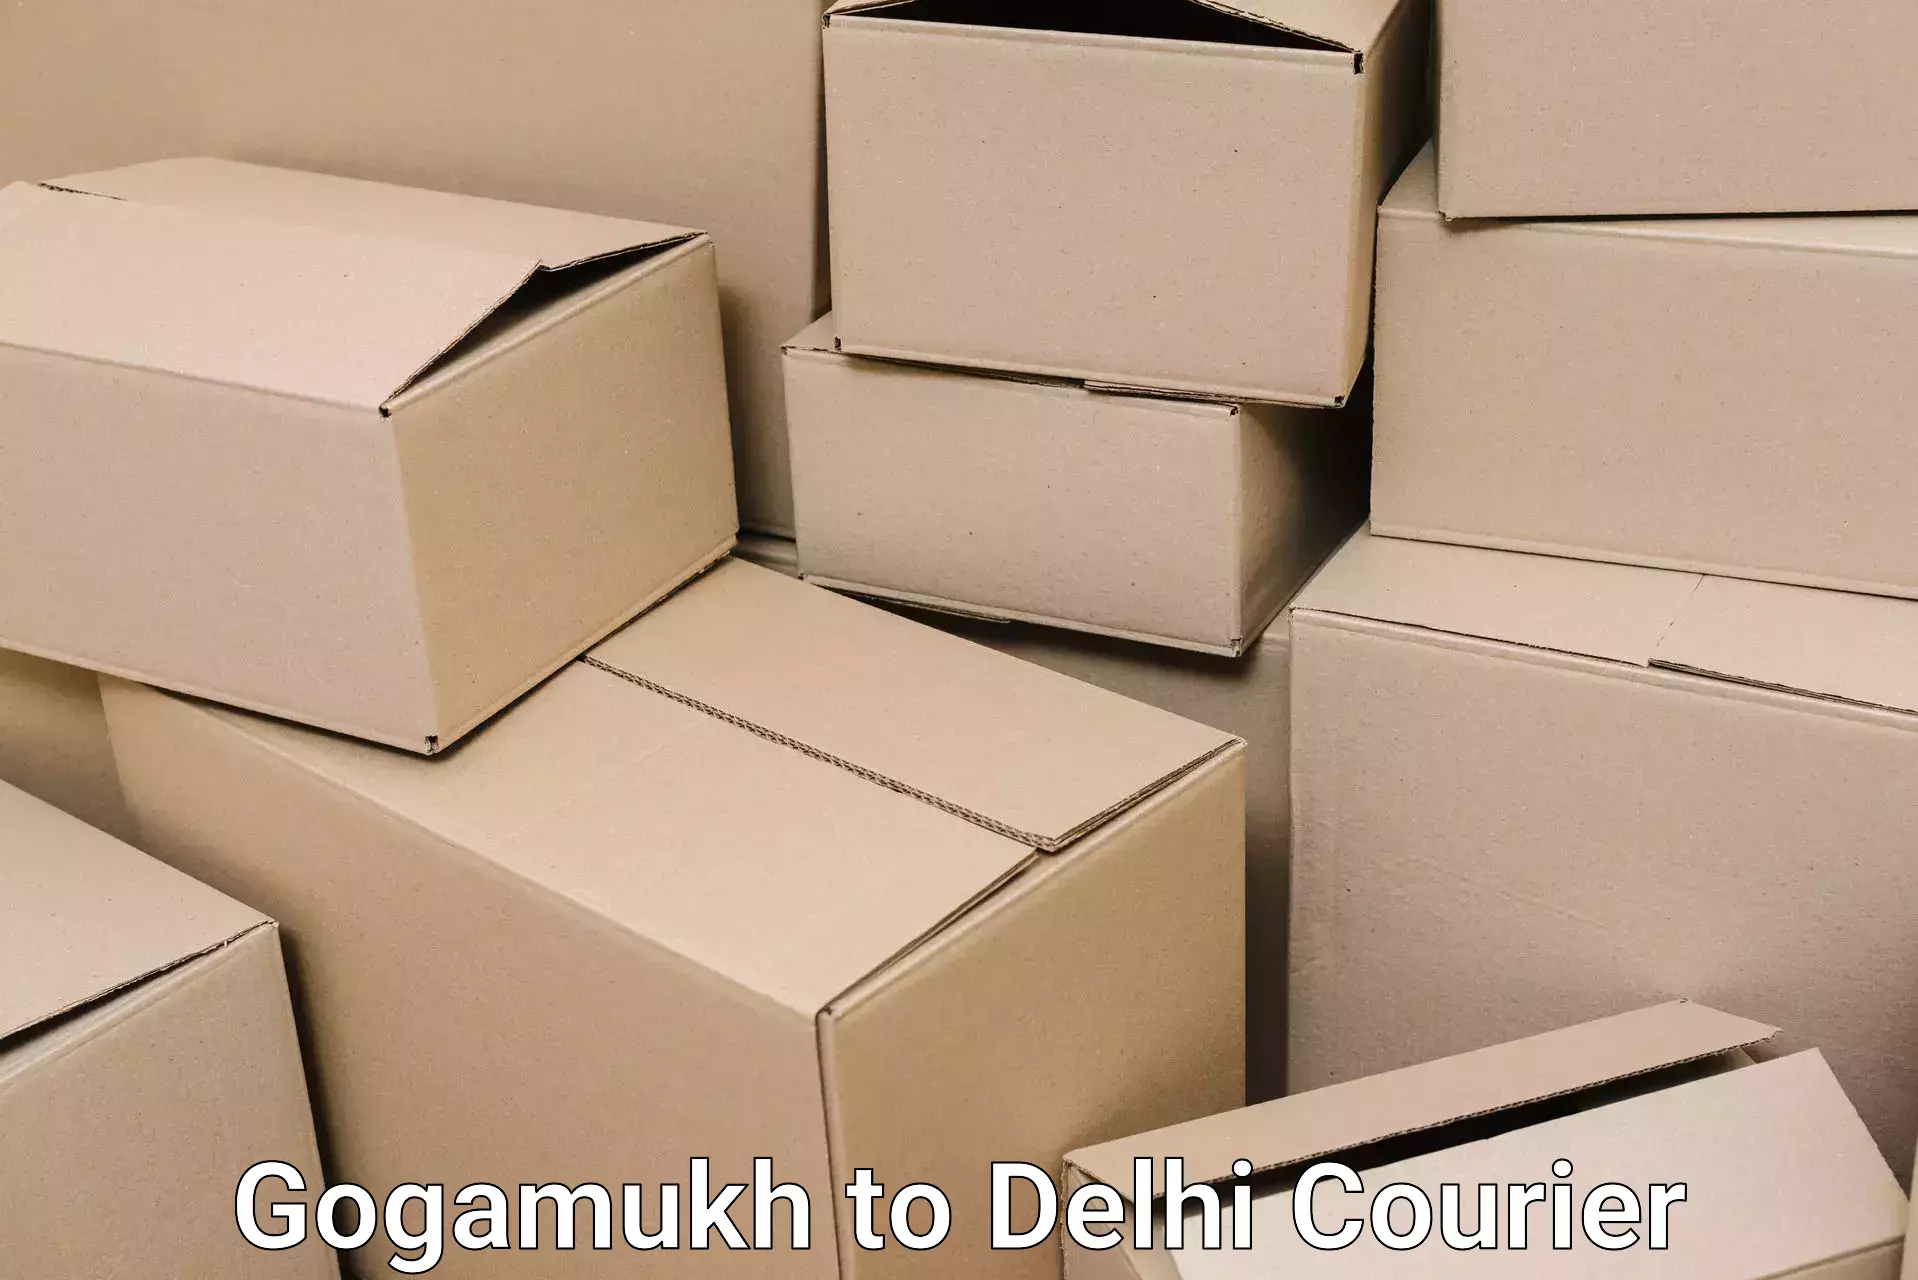 Household moving experts Gogamukh to Subhash Nagar